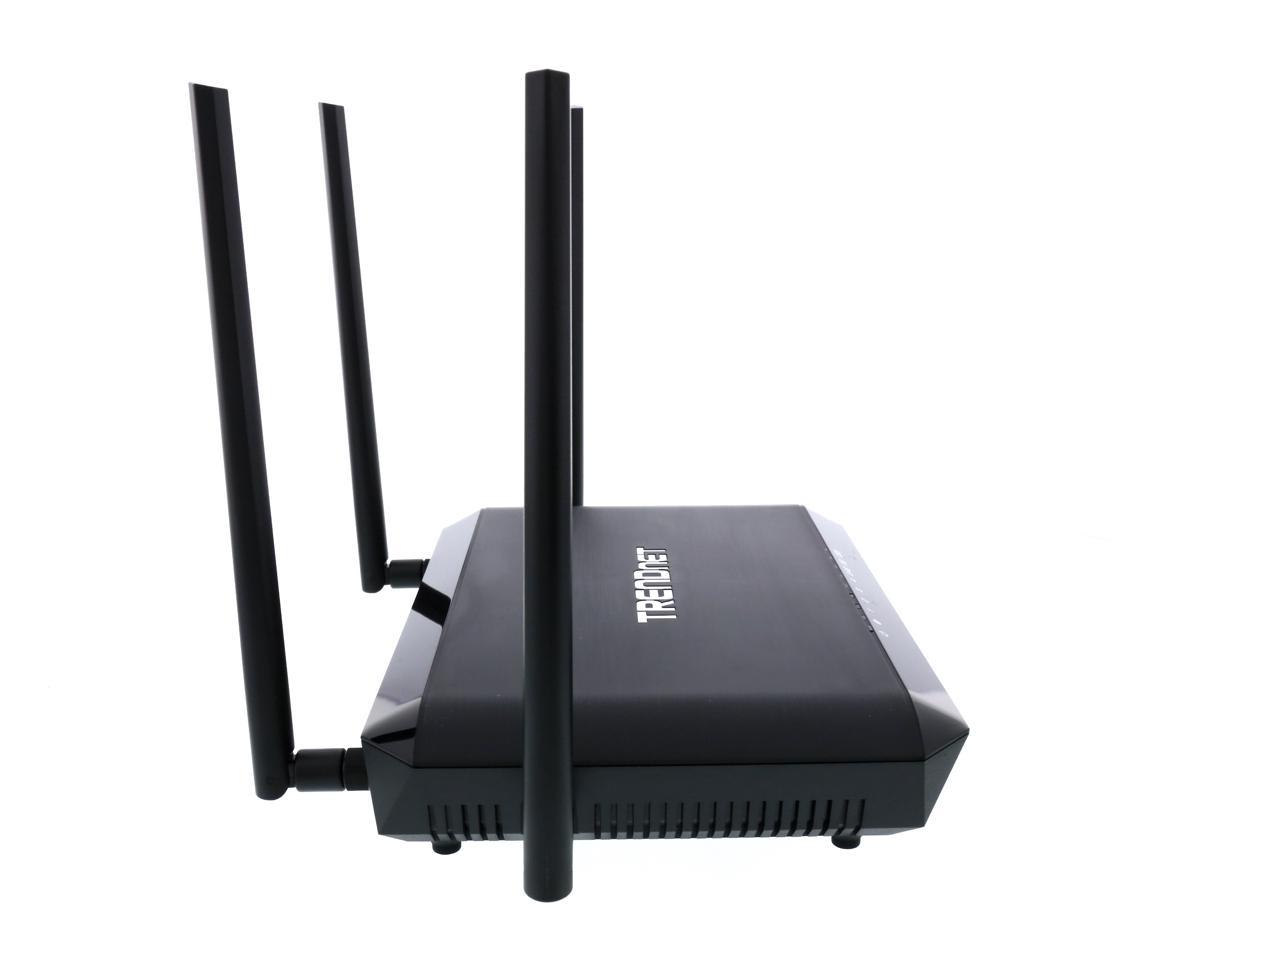 TRENDnet TEW-827DRU AC2600 v2 StreamBoost MU-MIMO Wi-Fi Router 